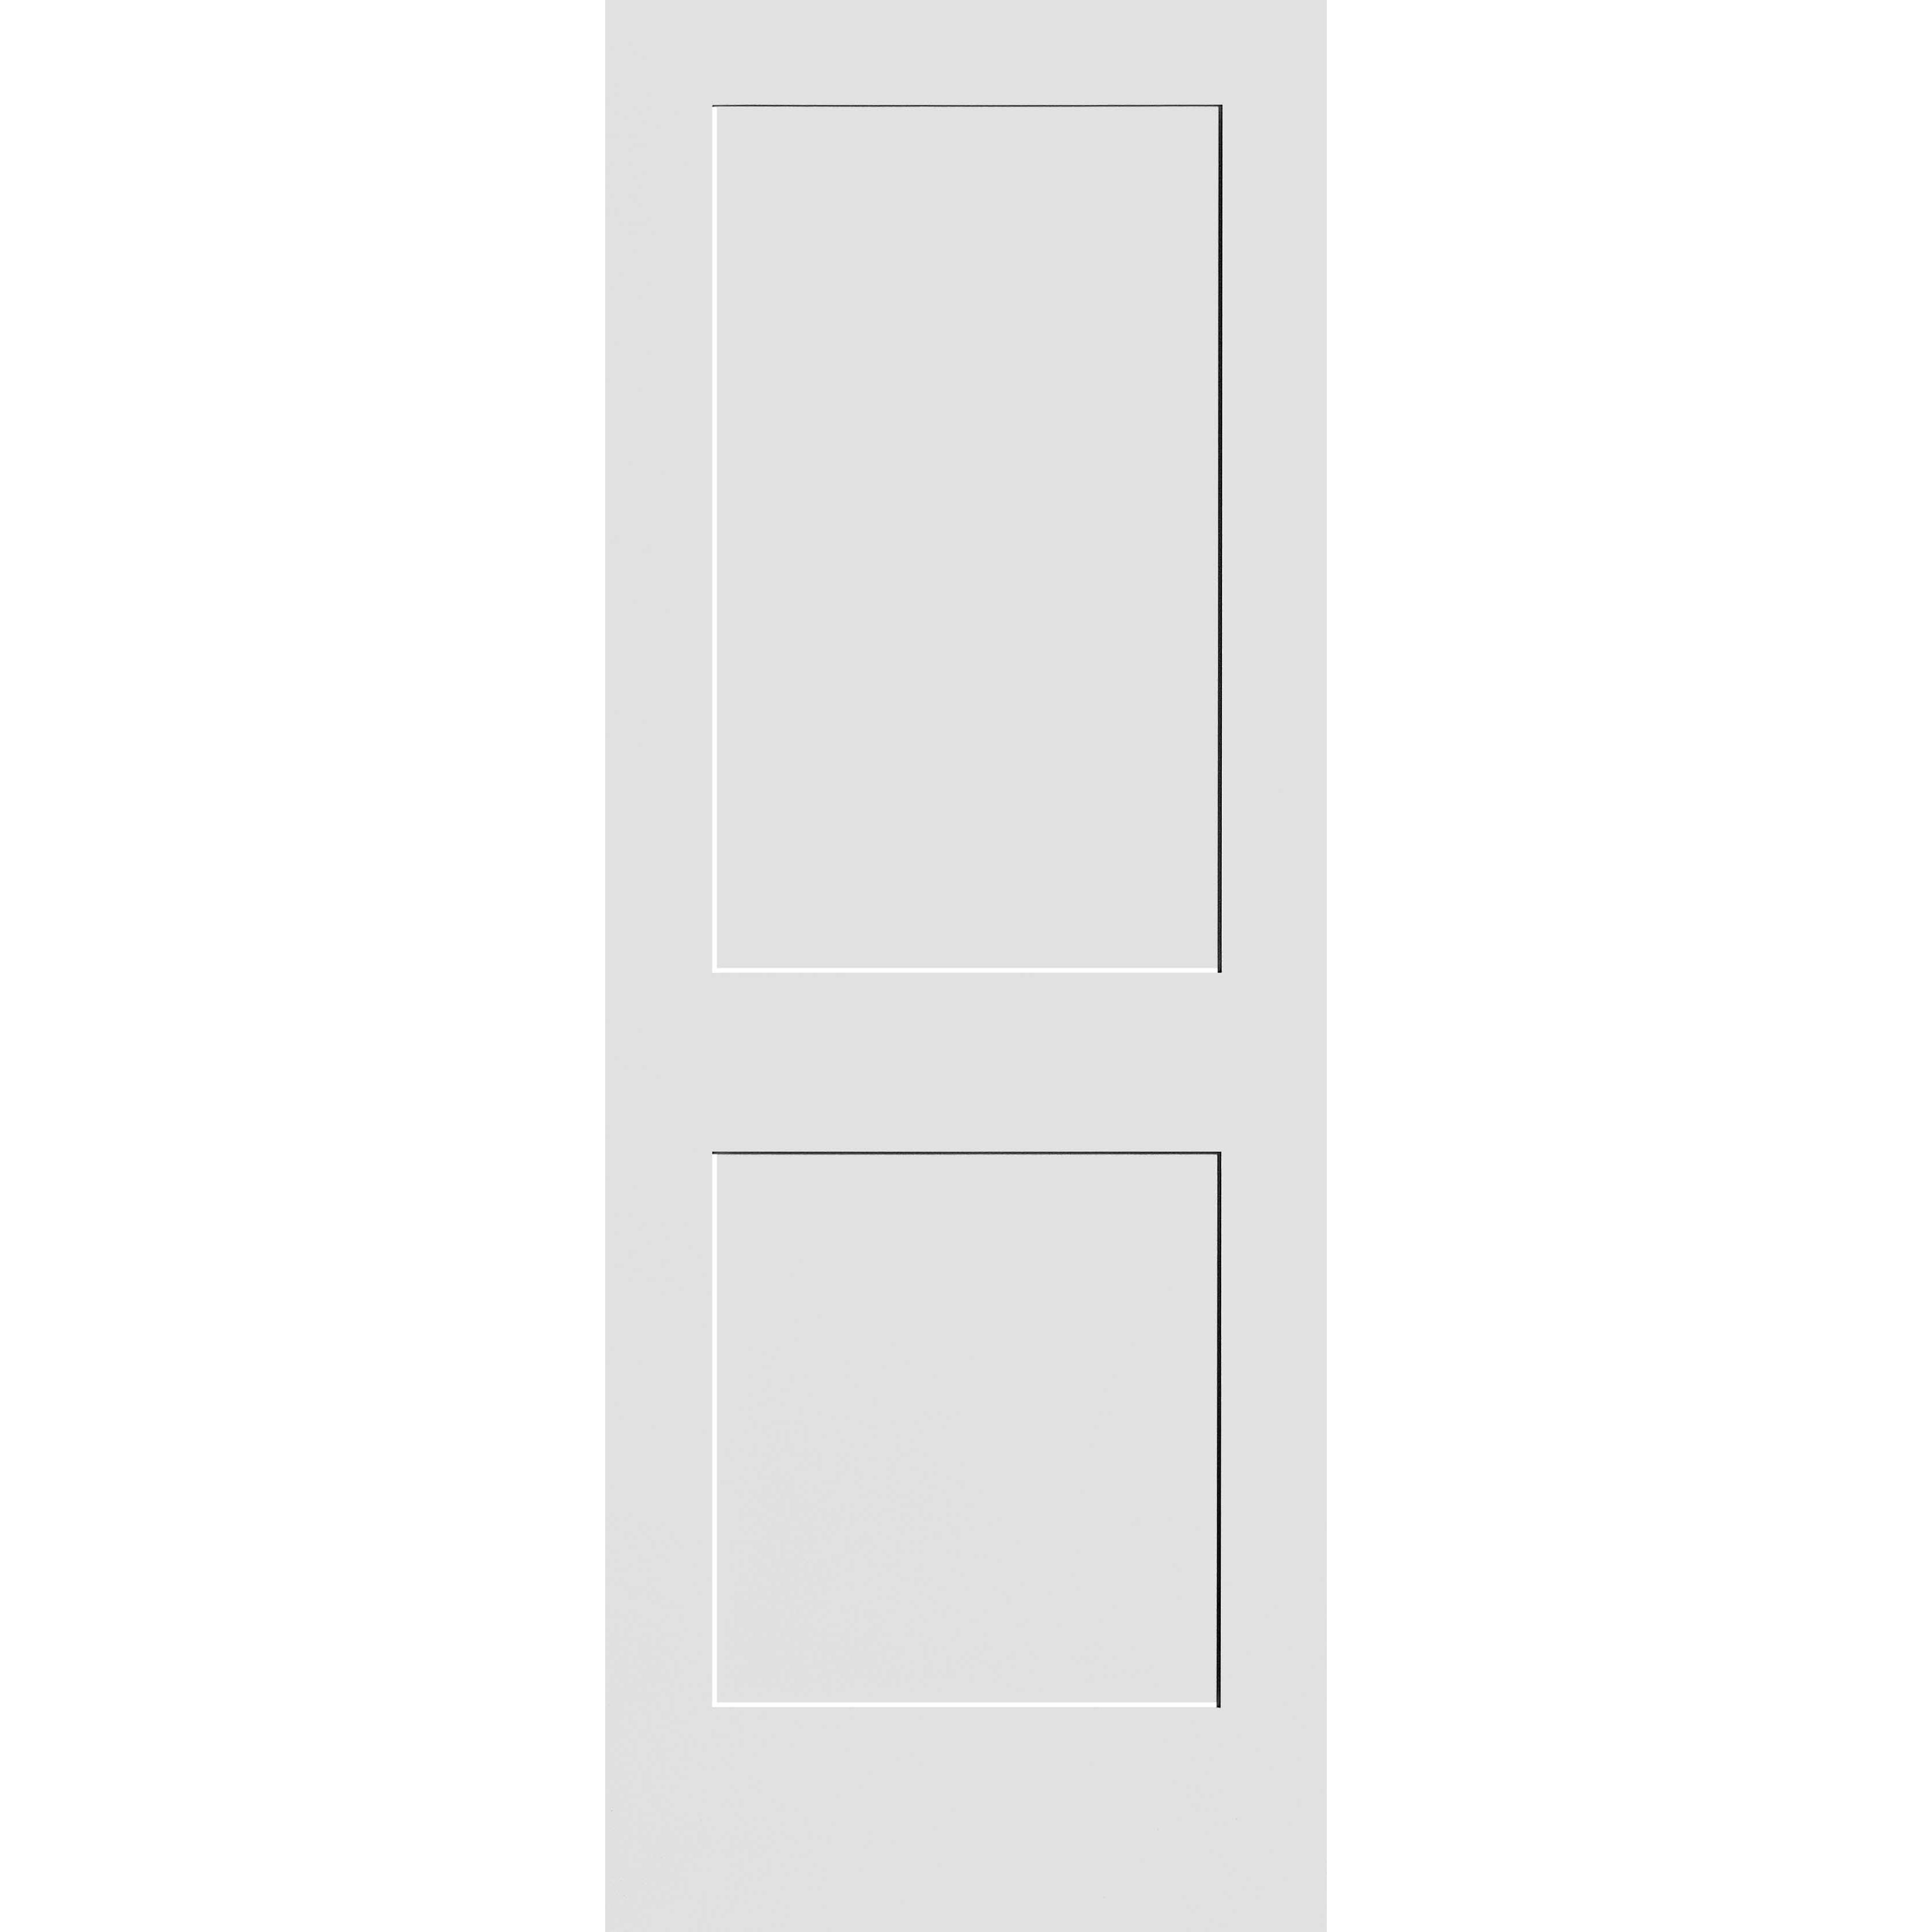 36X80 #8402 MDF PRIMED SHAKER PANEL INTERIOR DOOR